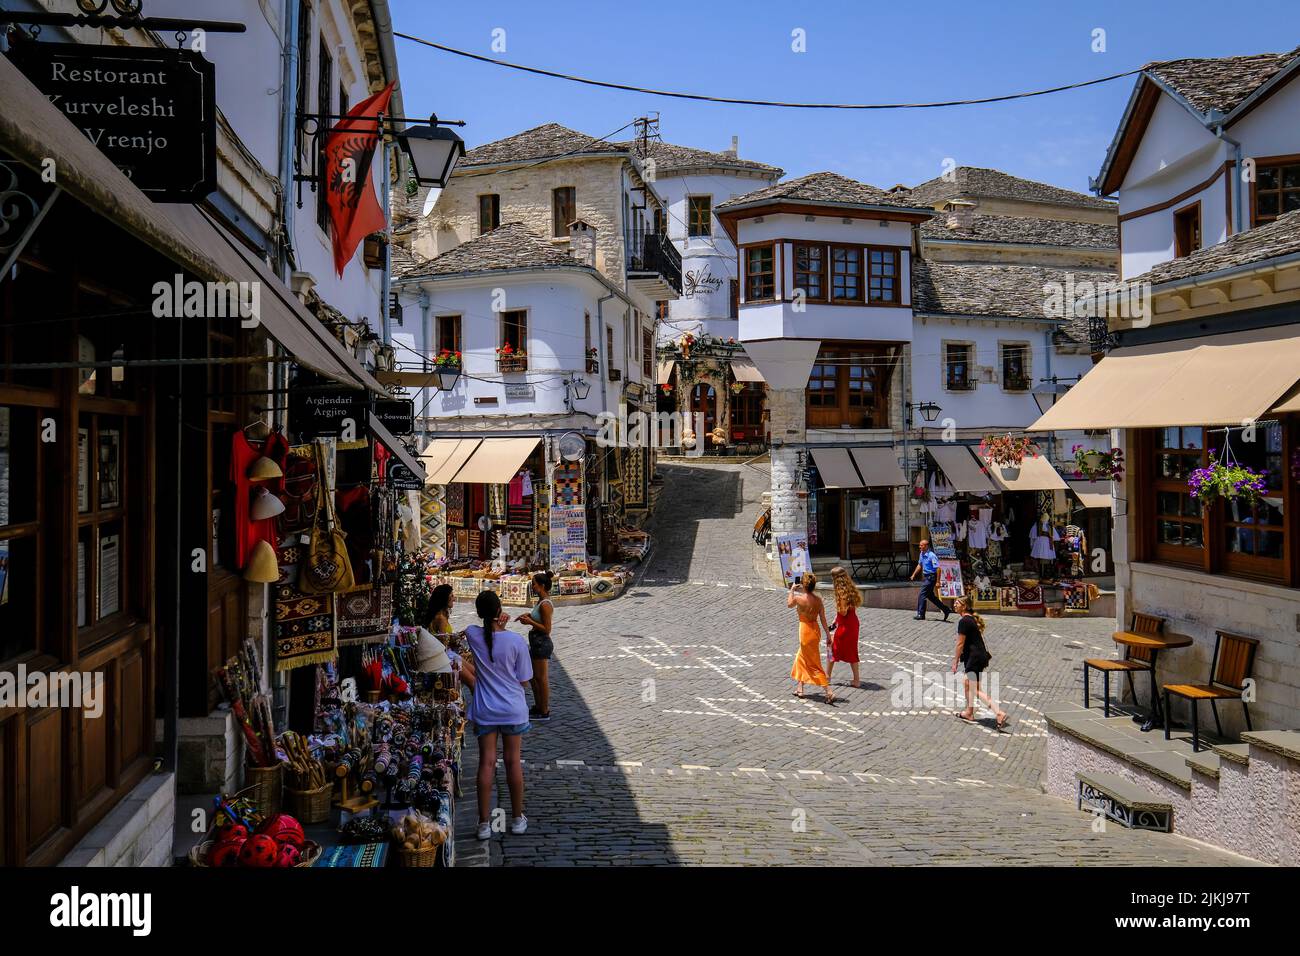 Stadt Gjirokastra, Gjirokastra, Albanien - Touristen besuchen die historische Altstadt der Bergstadt Gjirokastra, UNESCO-Weltkulturerbe. Stockfoto